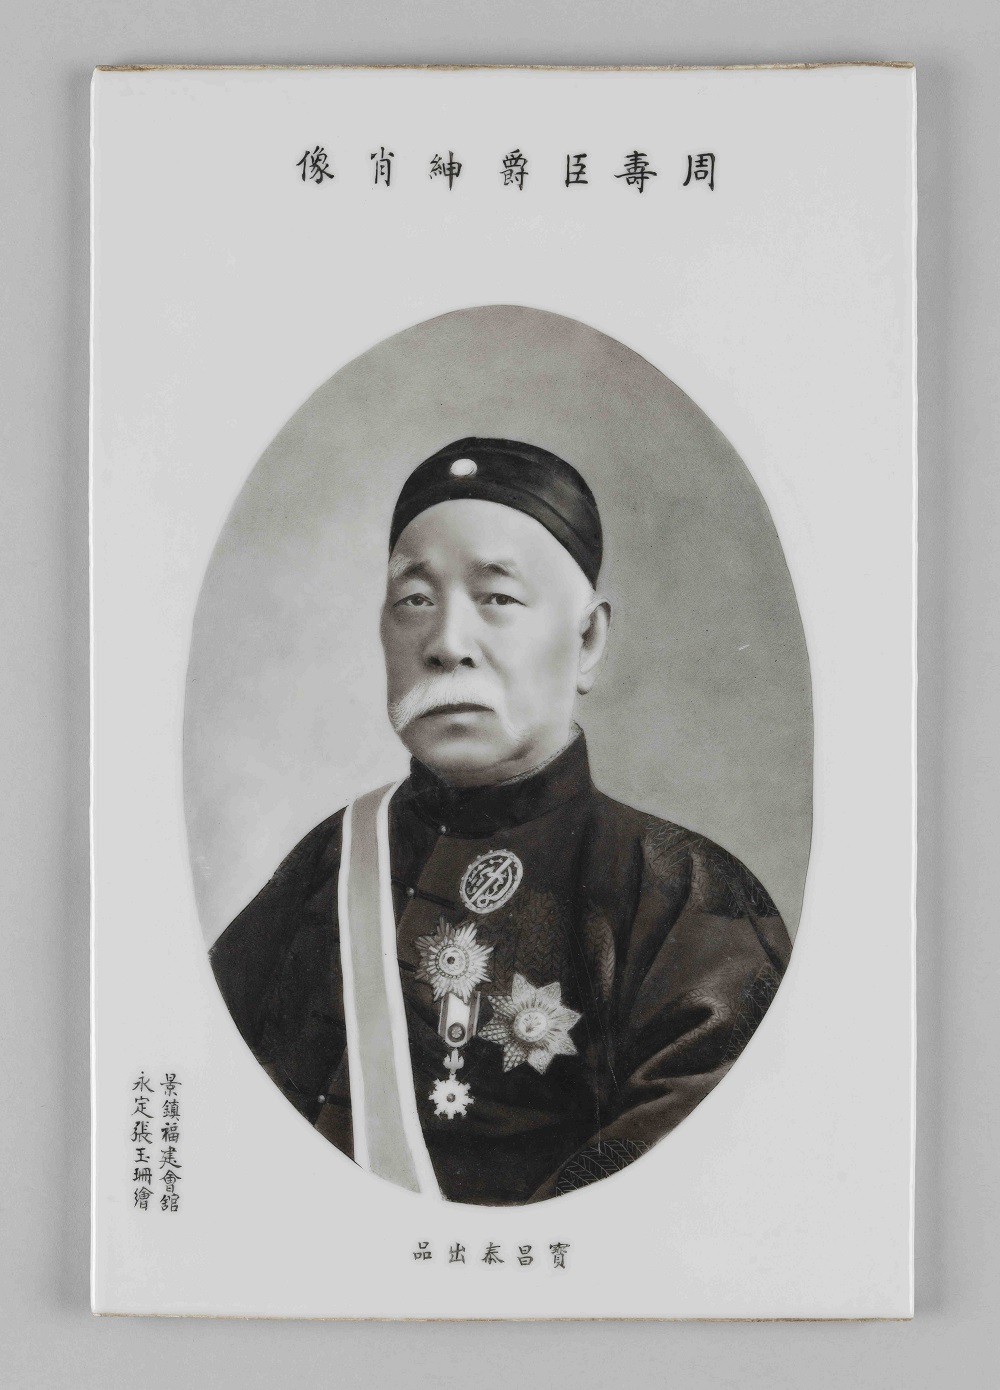 Porcelain photo of Sir Shouson Chow